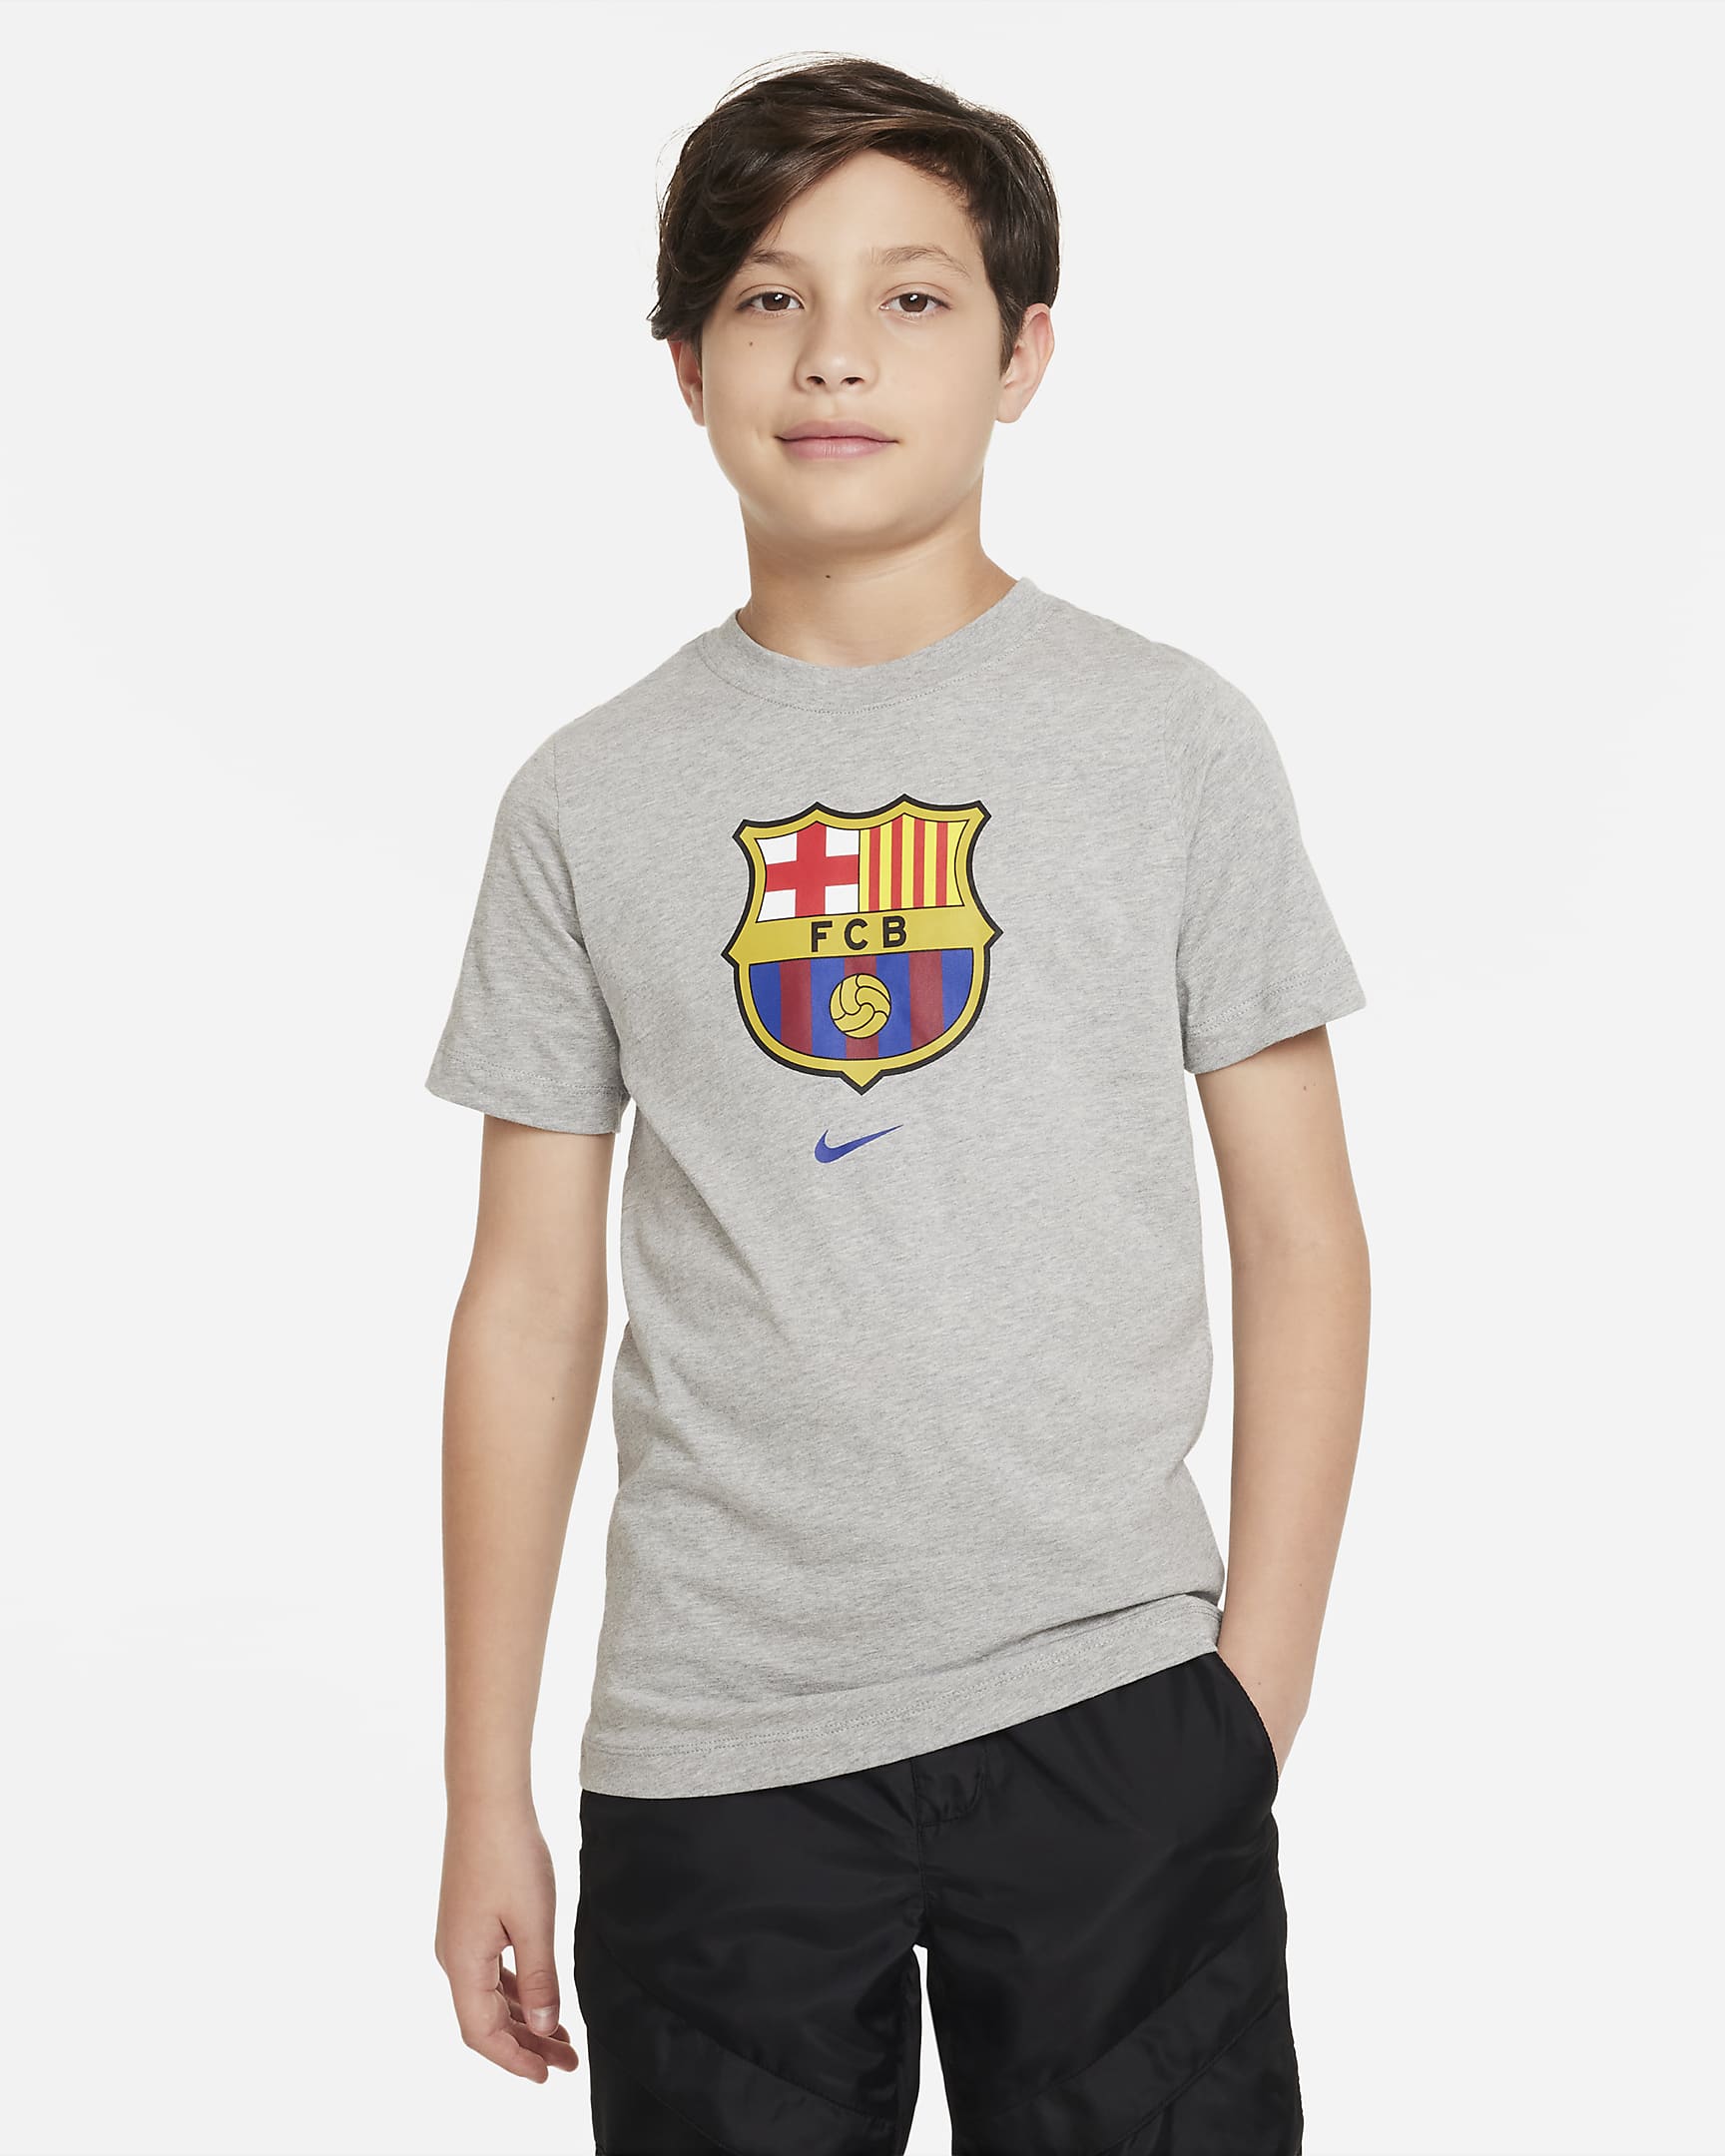 F.C. Barcelona Crest Older Kids' Nike T-Shirt. Nike BG